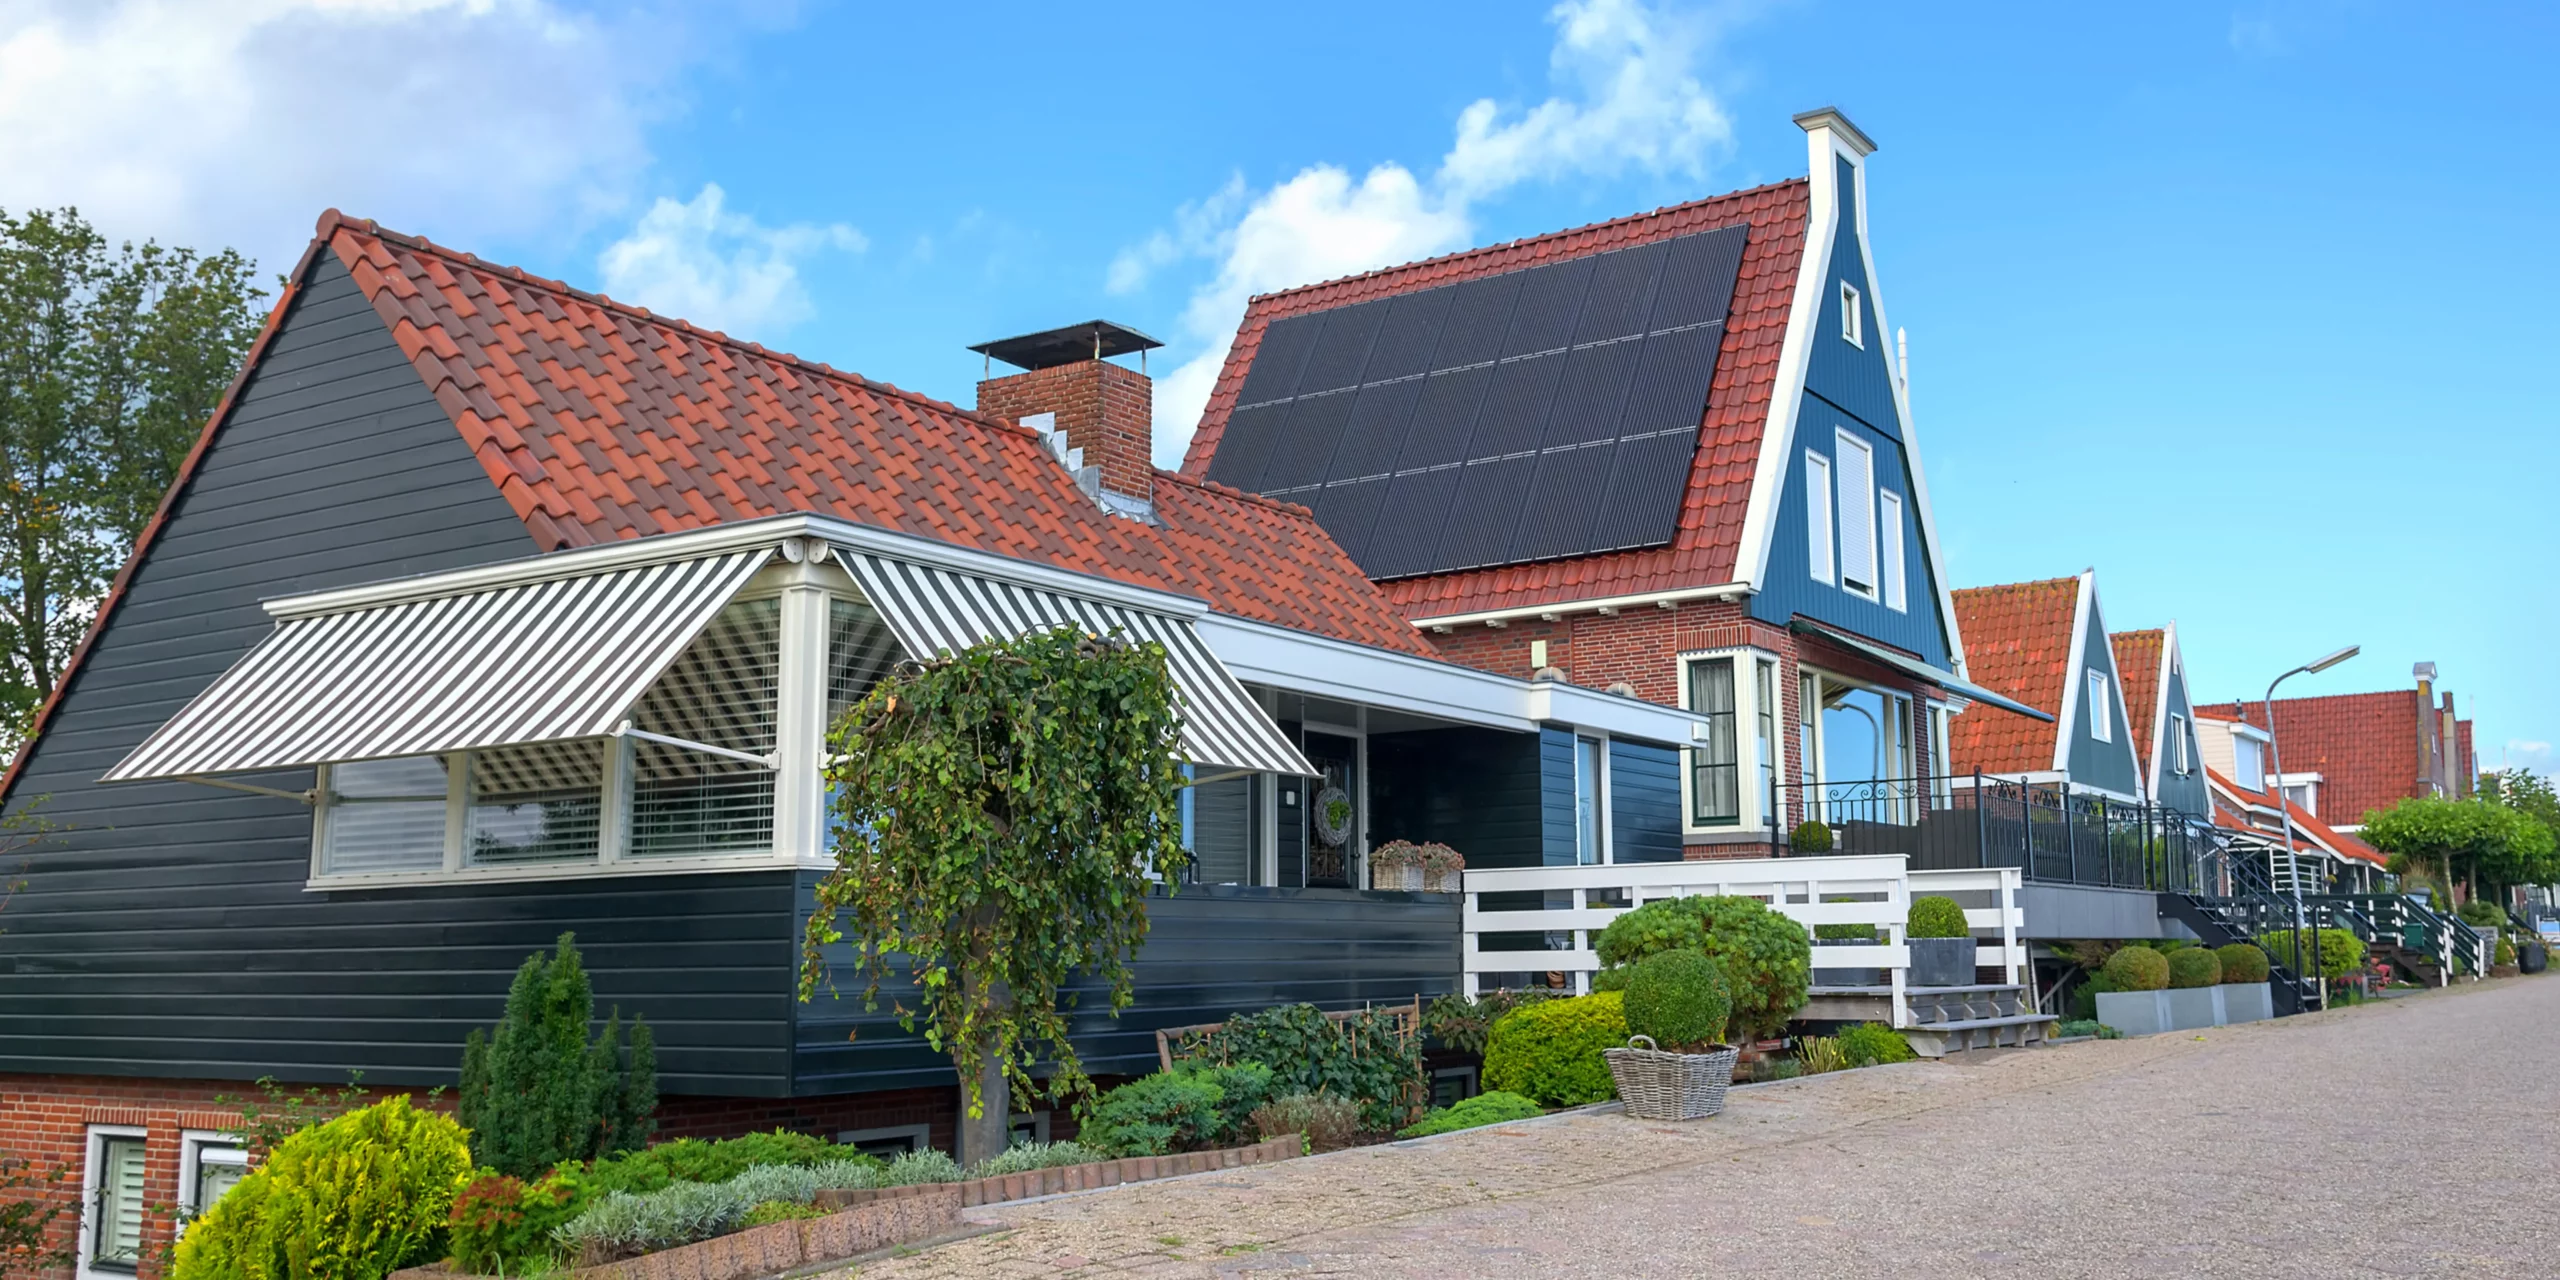 Een huis in Nederland waarover de WOZ-waarde opgevraagd zou kunnen worden.